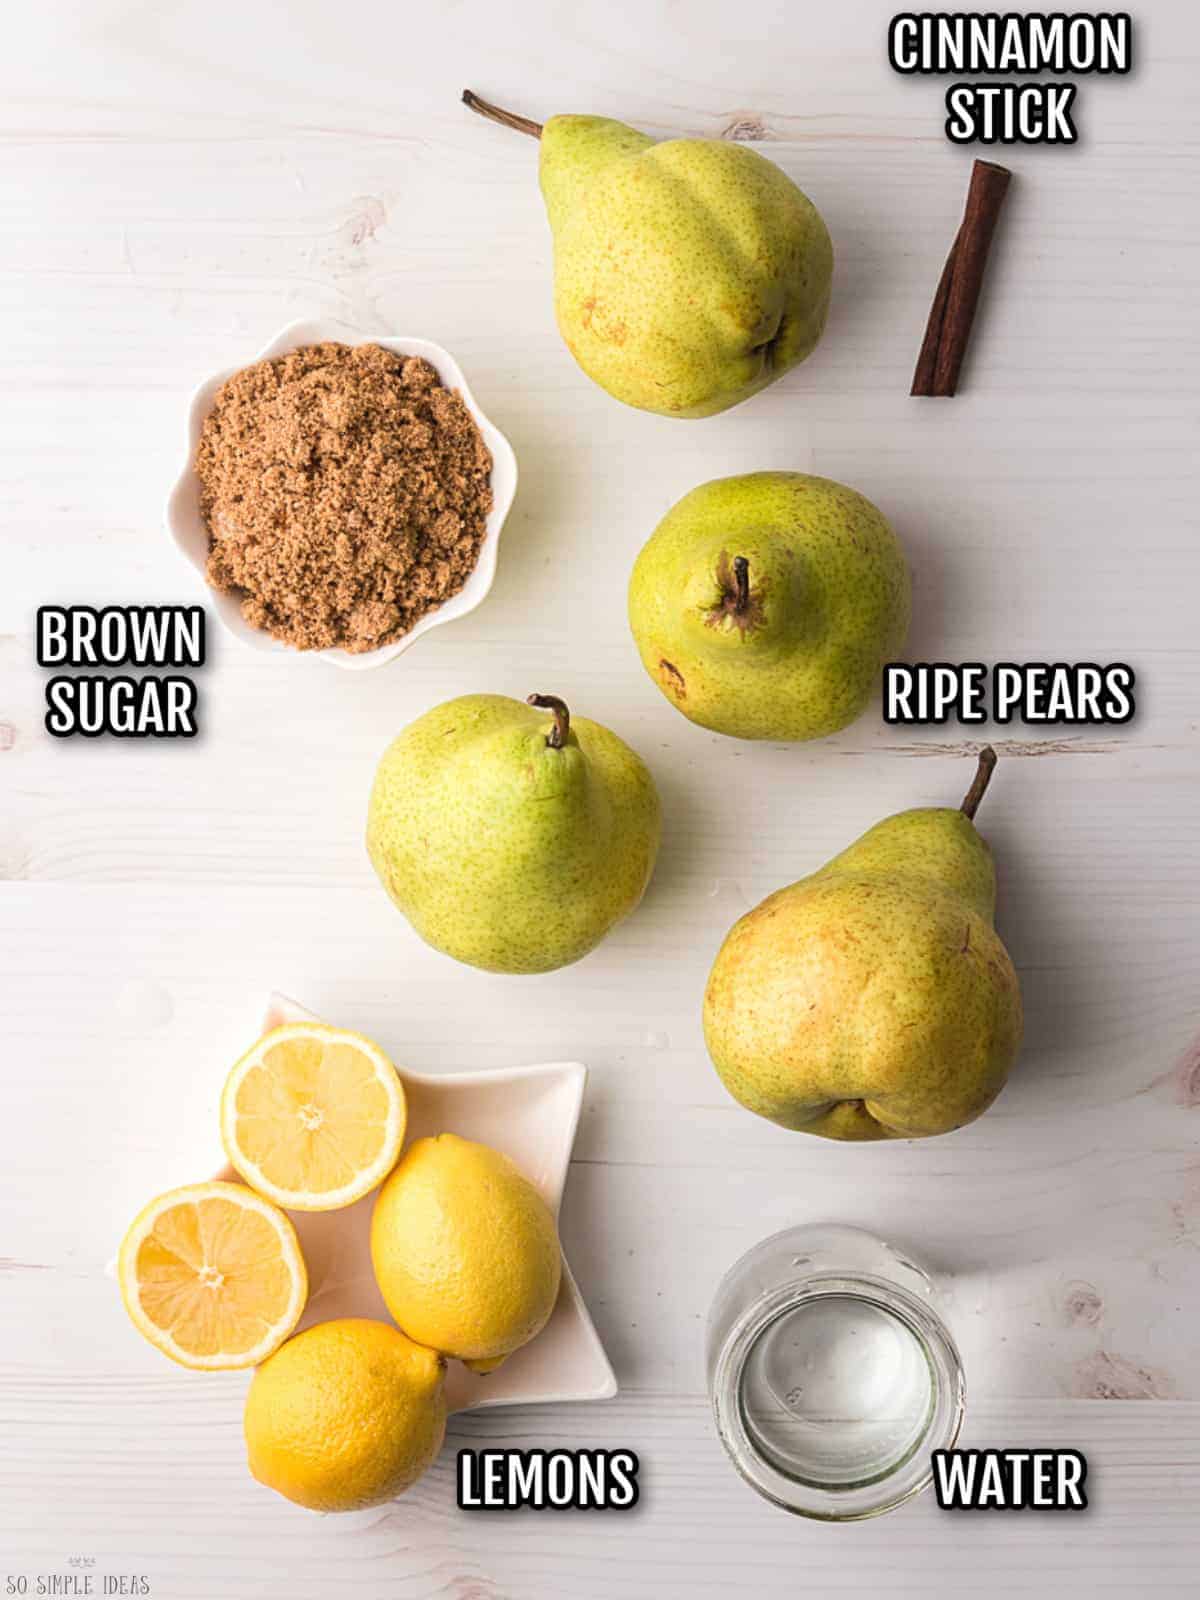 ingredients for stewed pears.